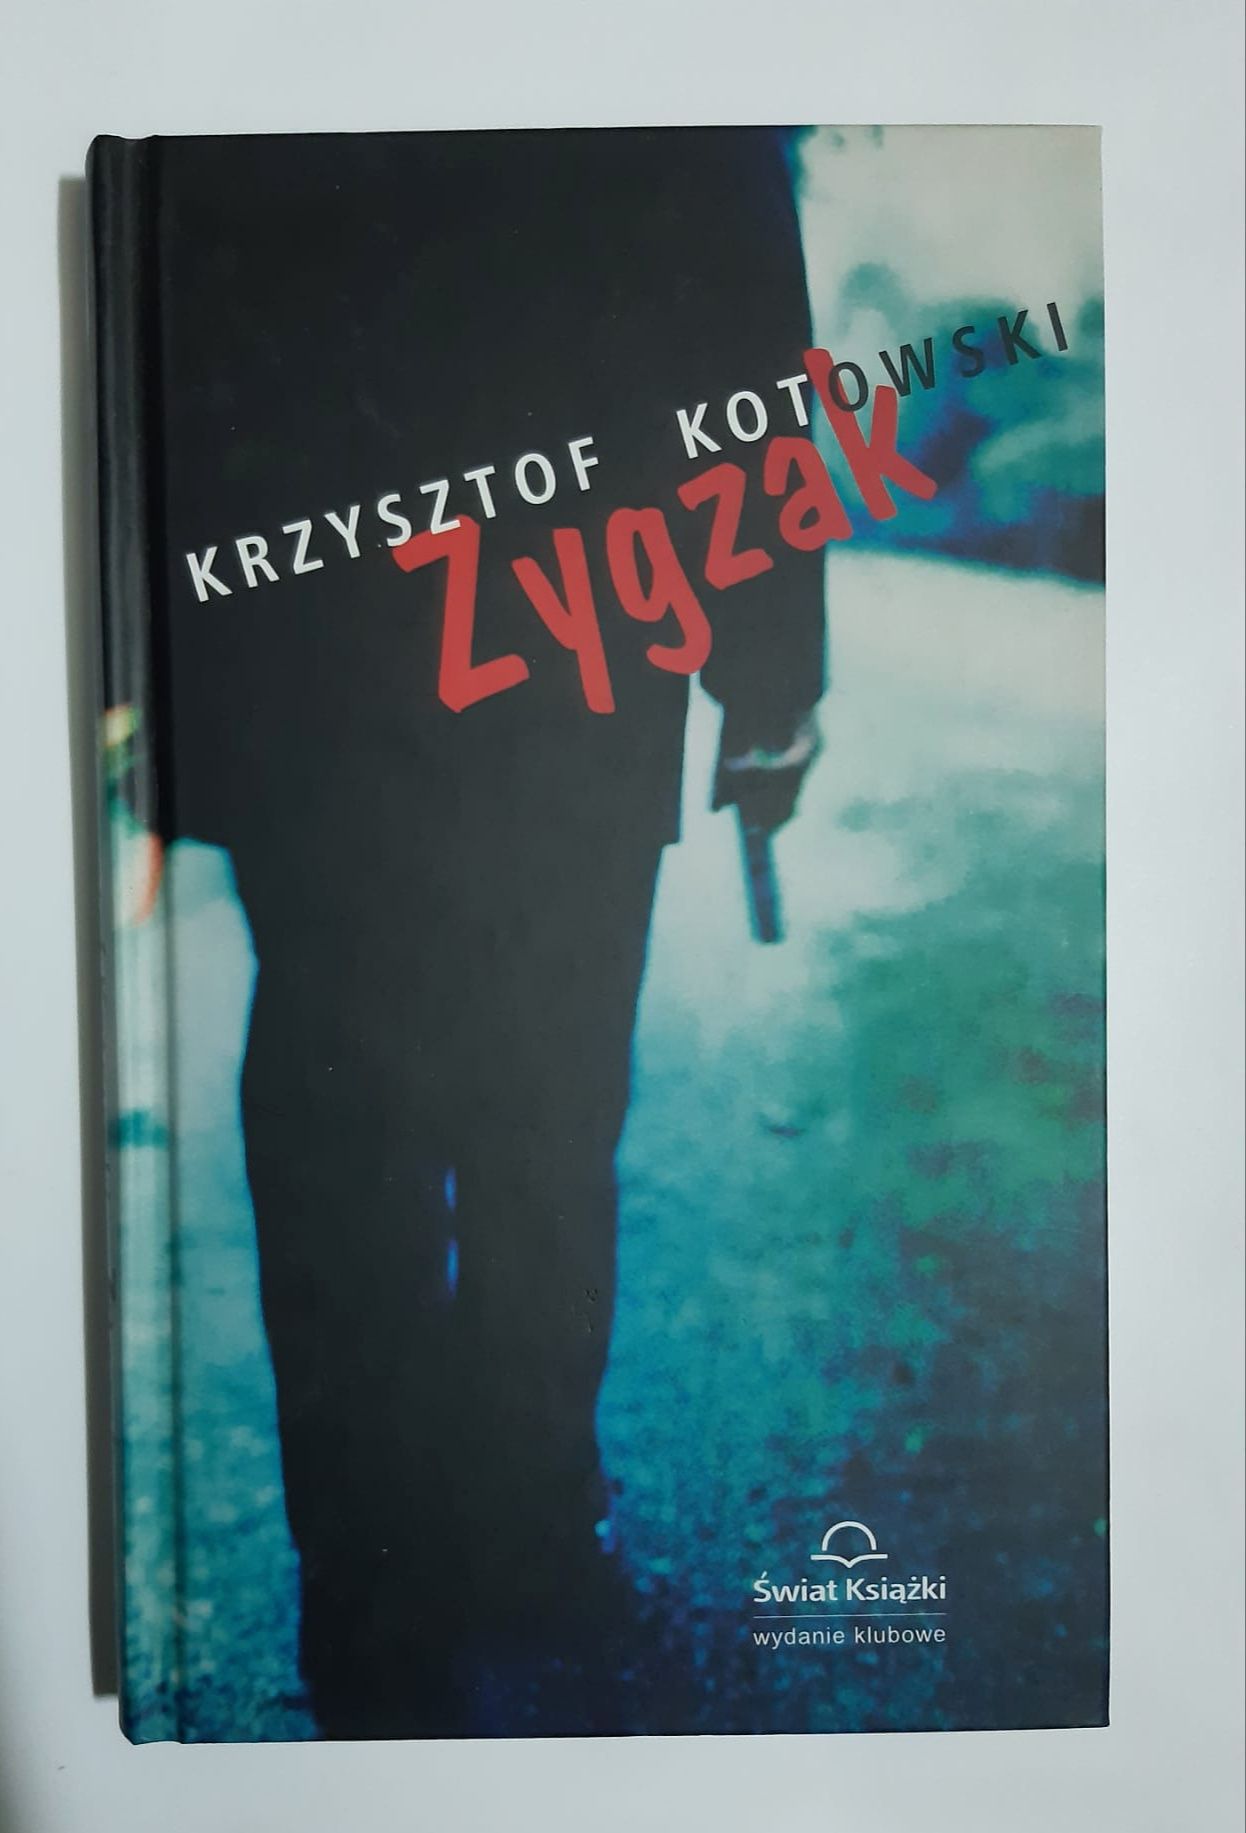 Krzysztof Kotowski zygzak Z1023